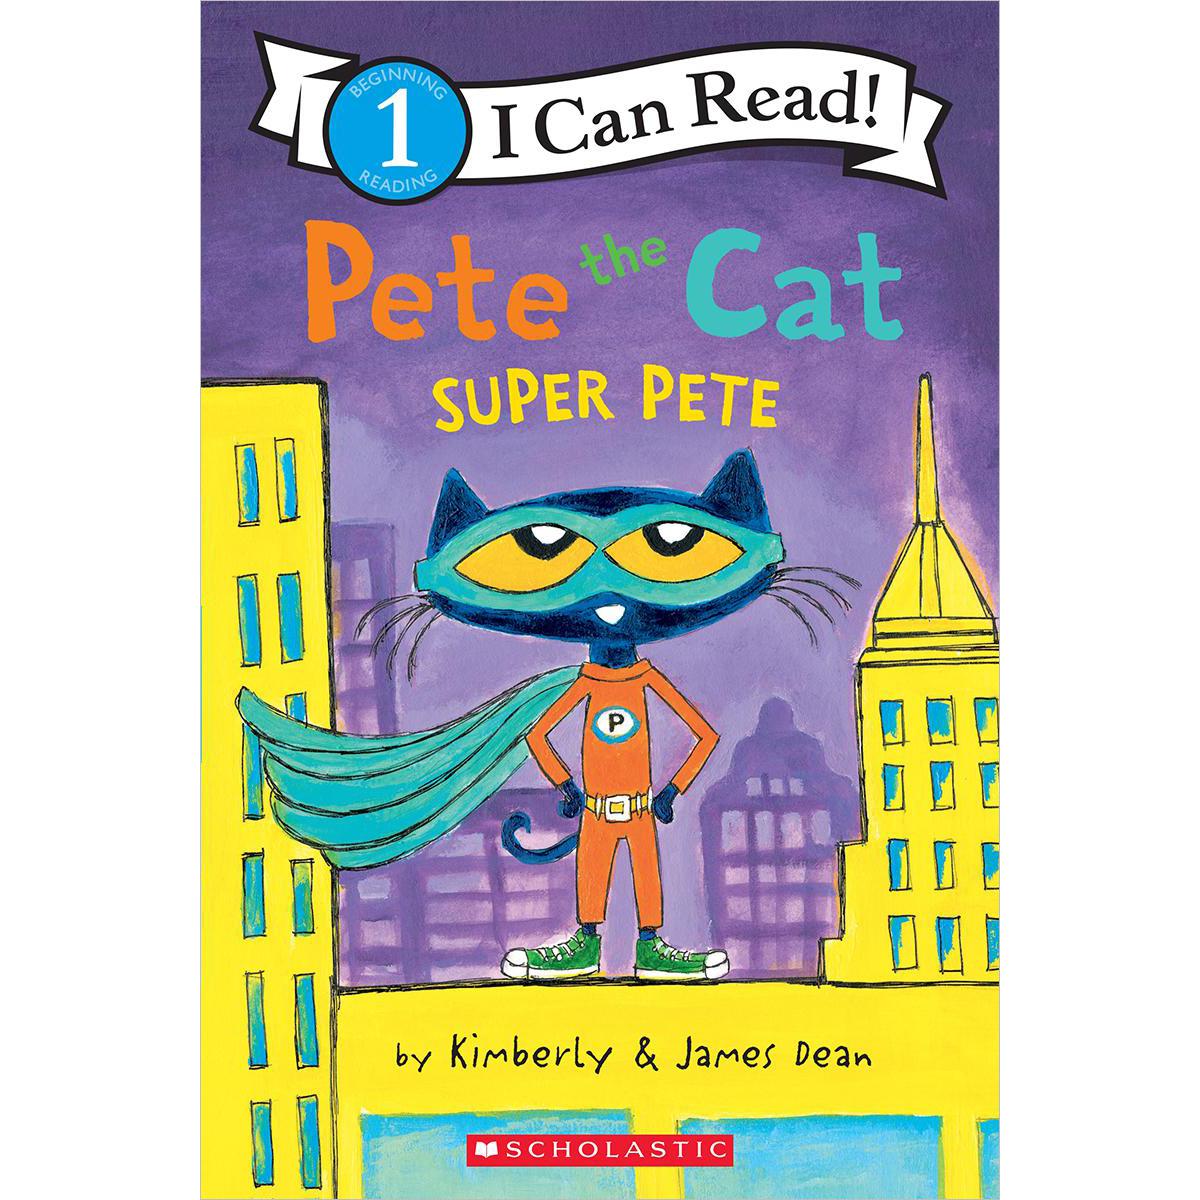  Pete The Cat: Super Pete 10-Pack 